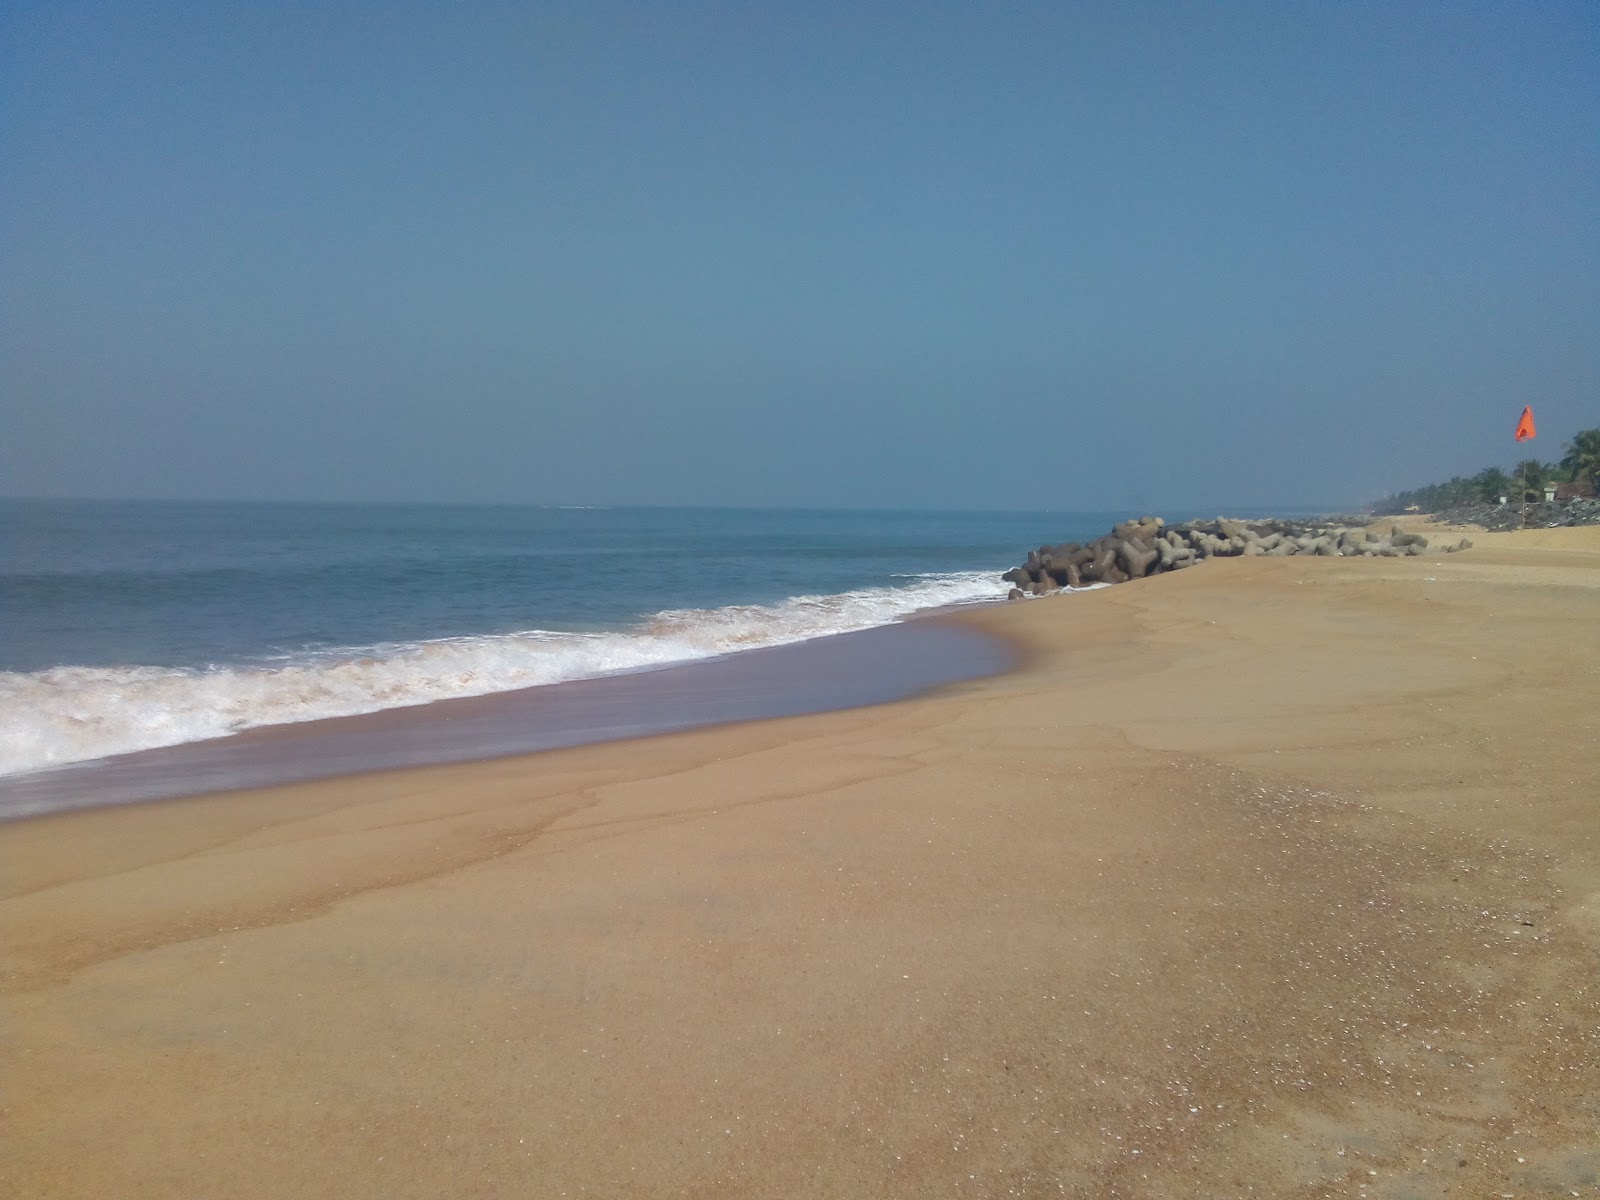 Foto av Ullal beach med ljus sand yta